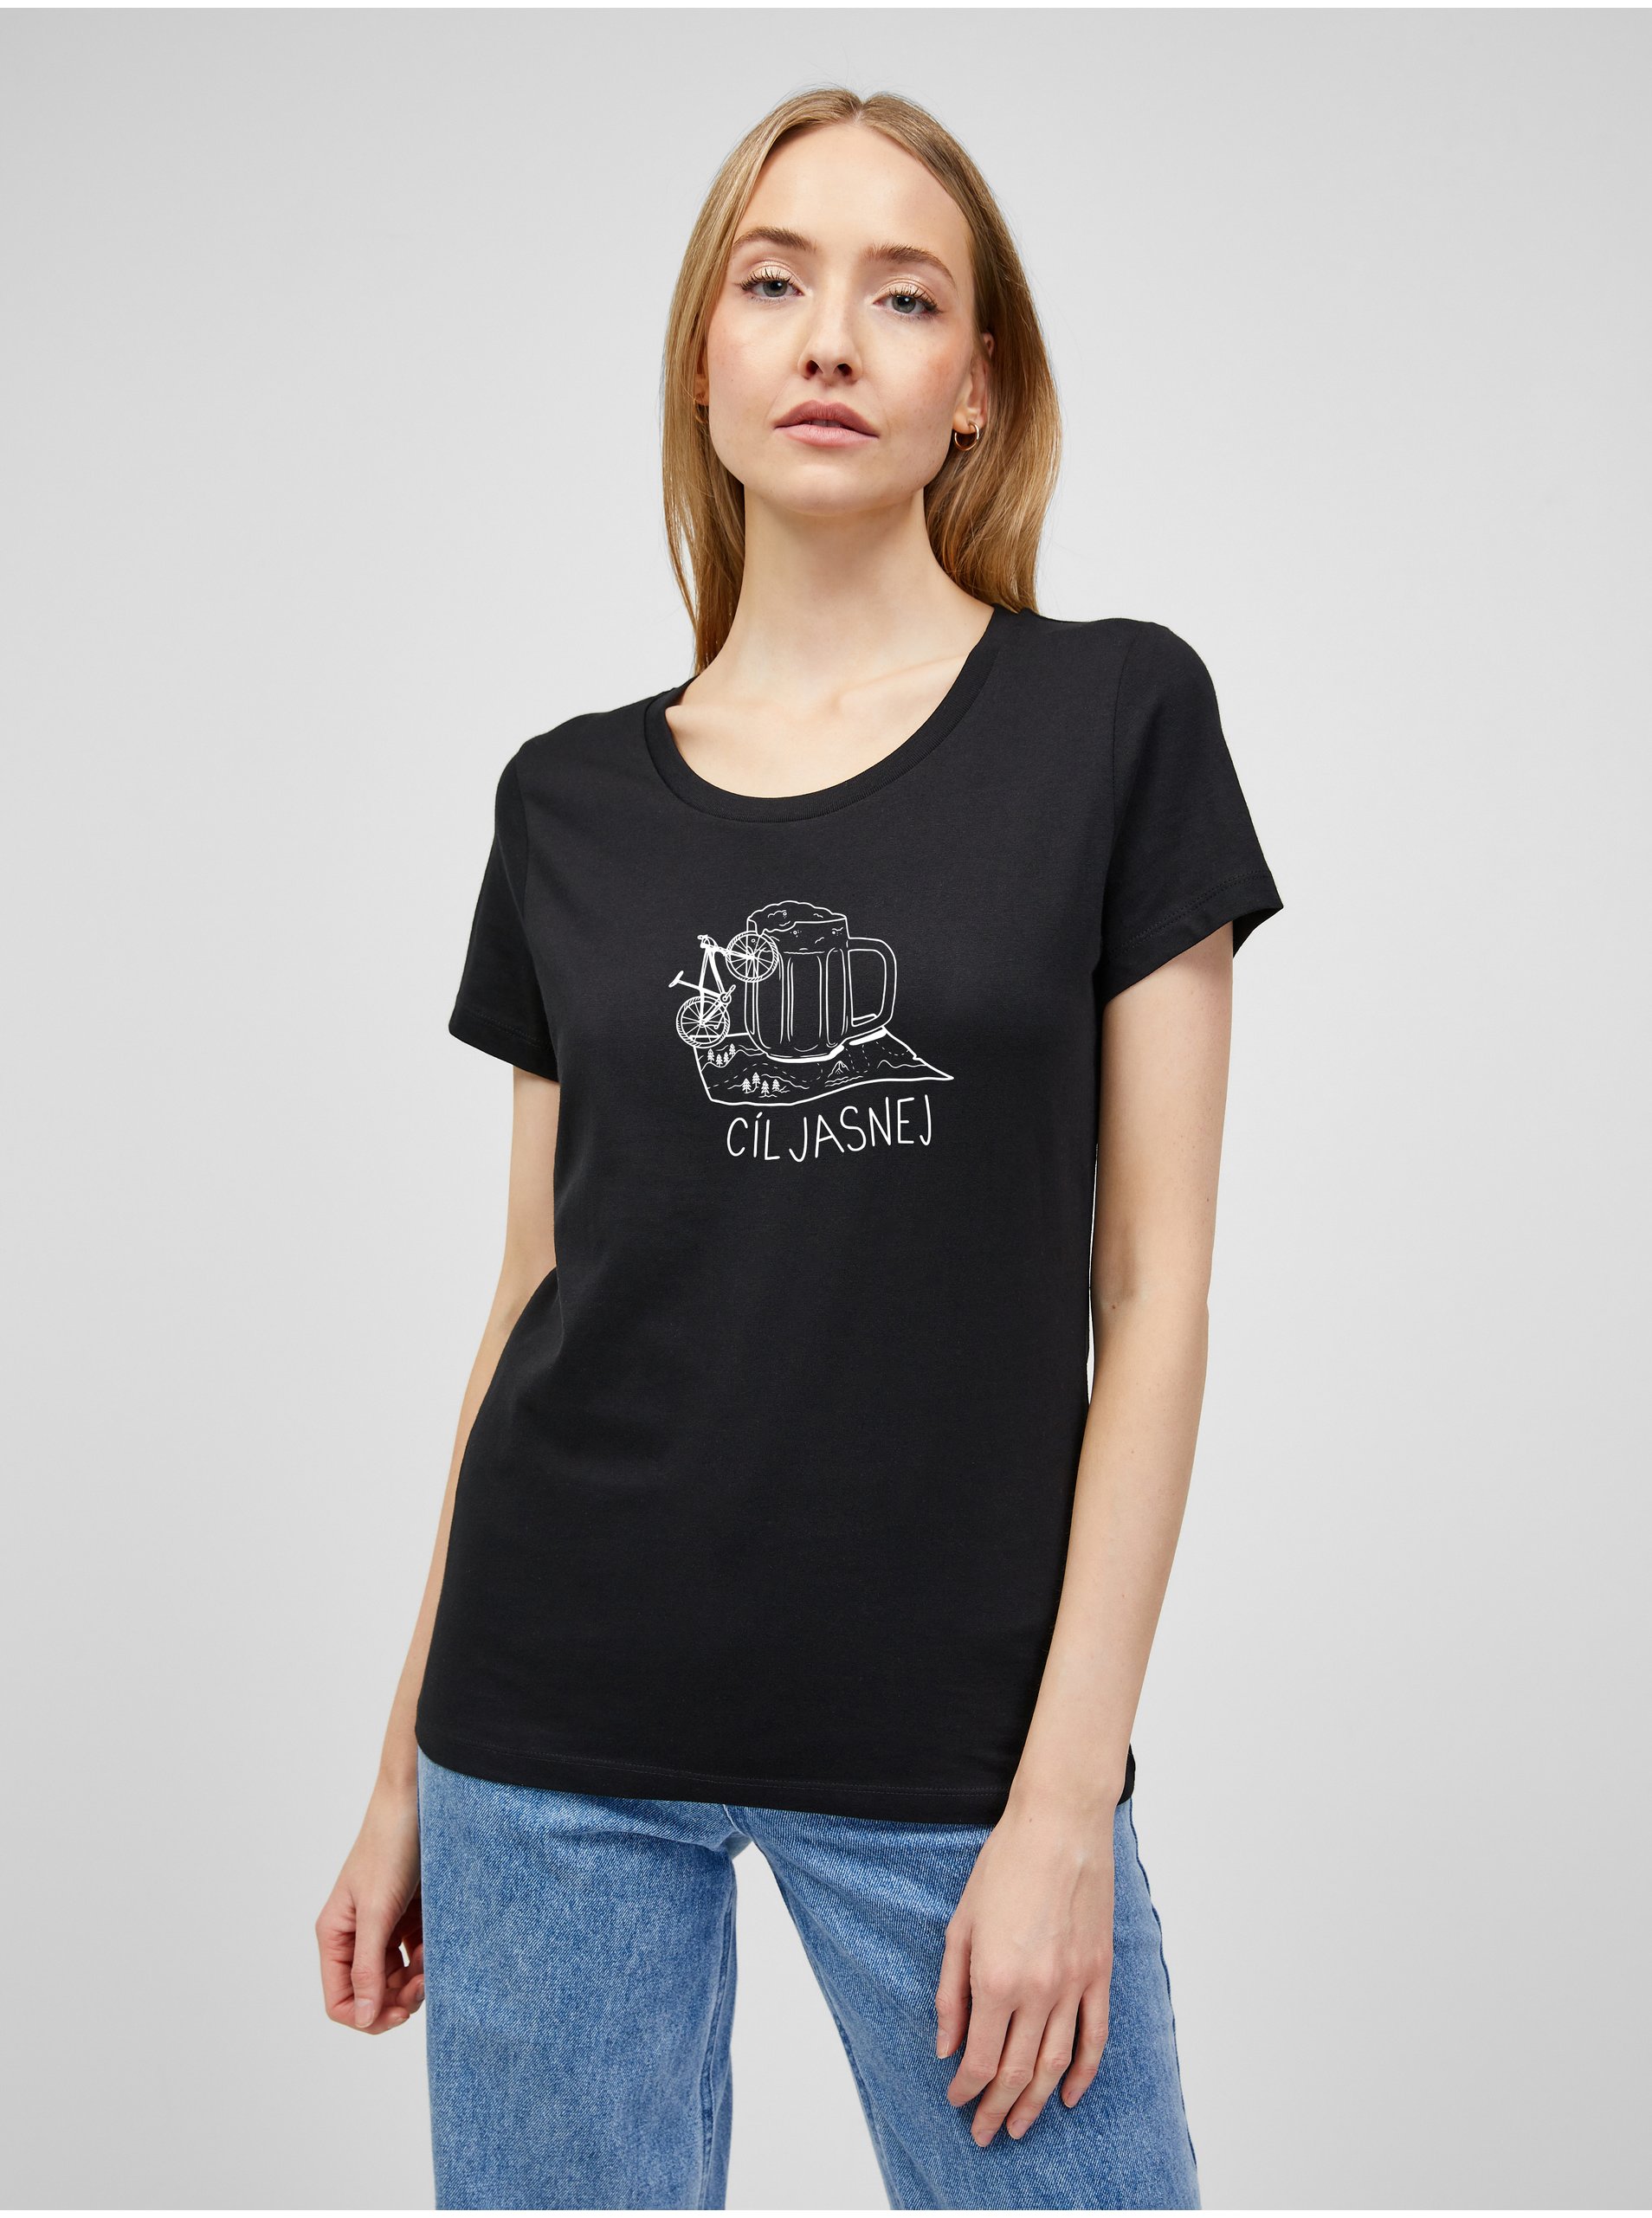 Levně Černé dámské tričko s potiskem ZOOT.Original Cíl jasnej